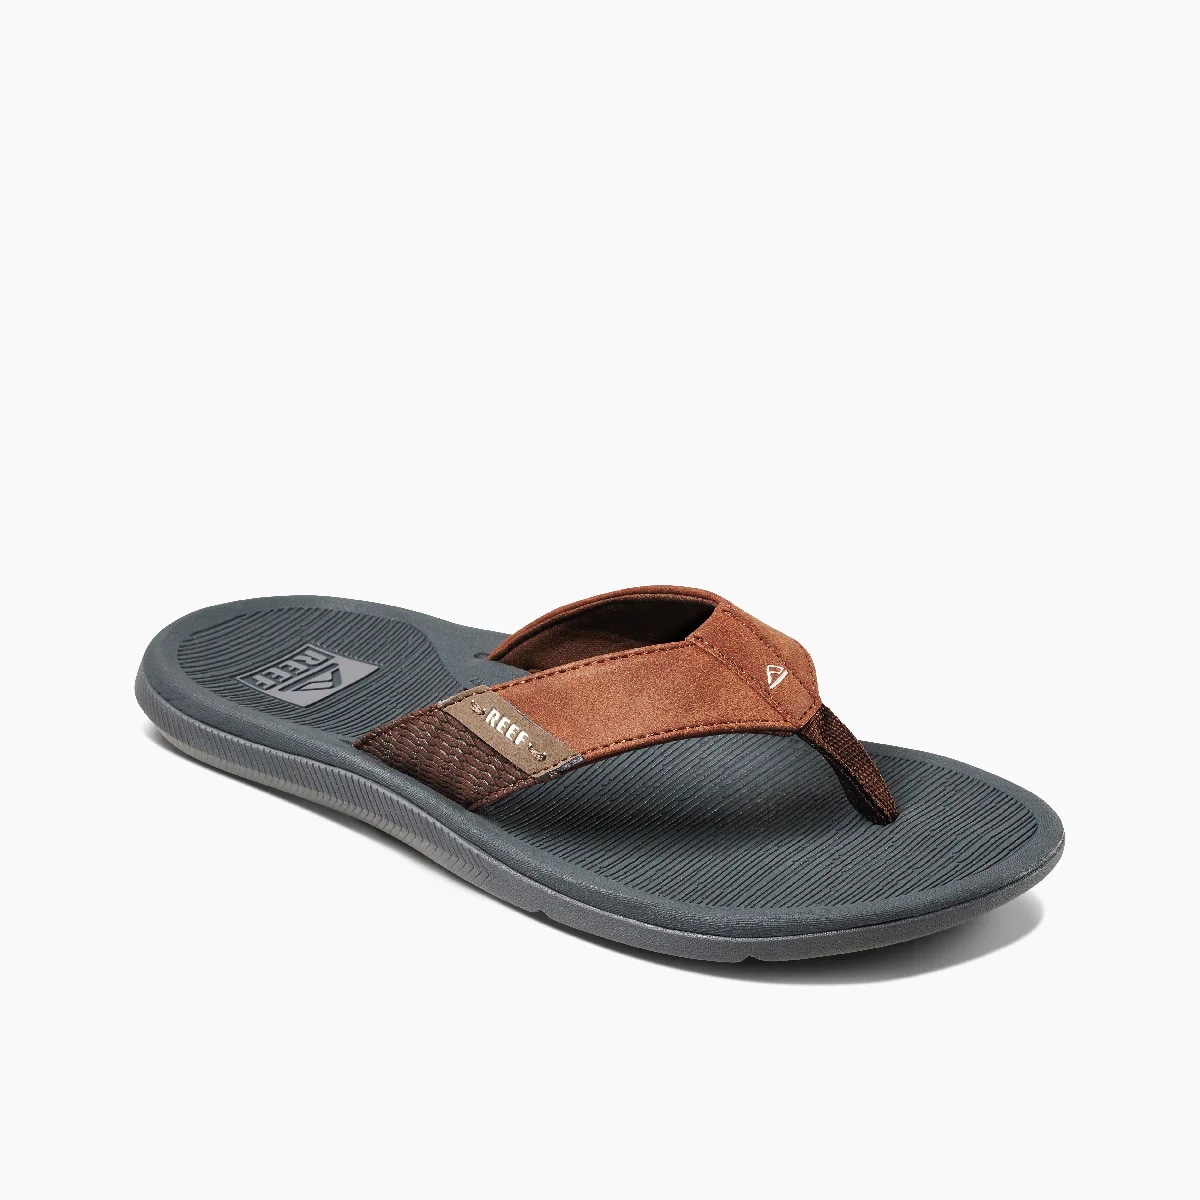 Men's Reef Santa Ana Sandals Grey/Tan